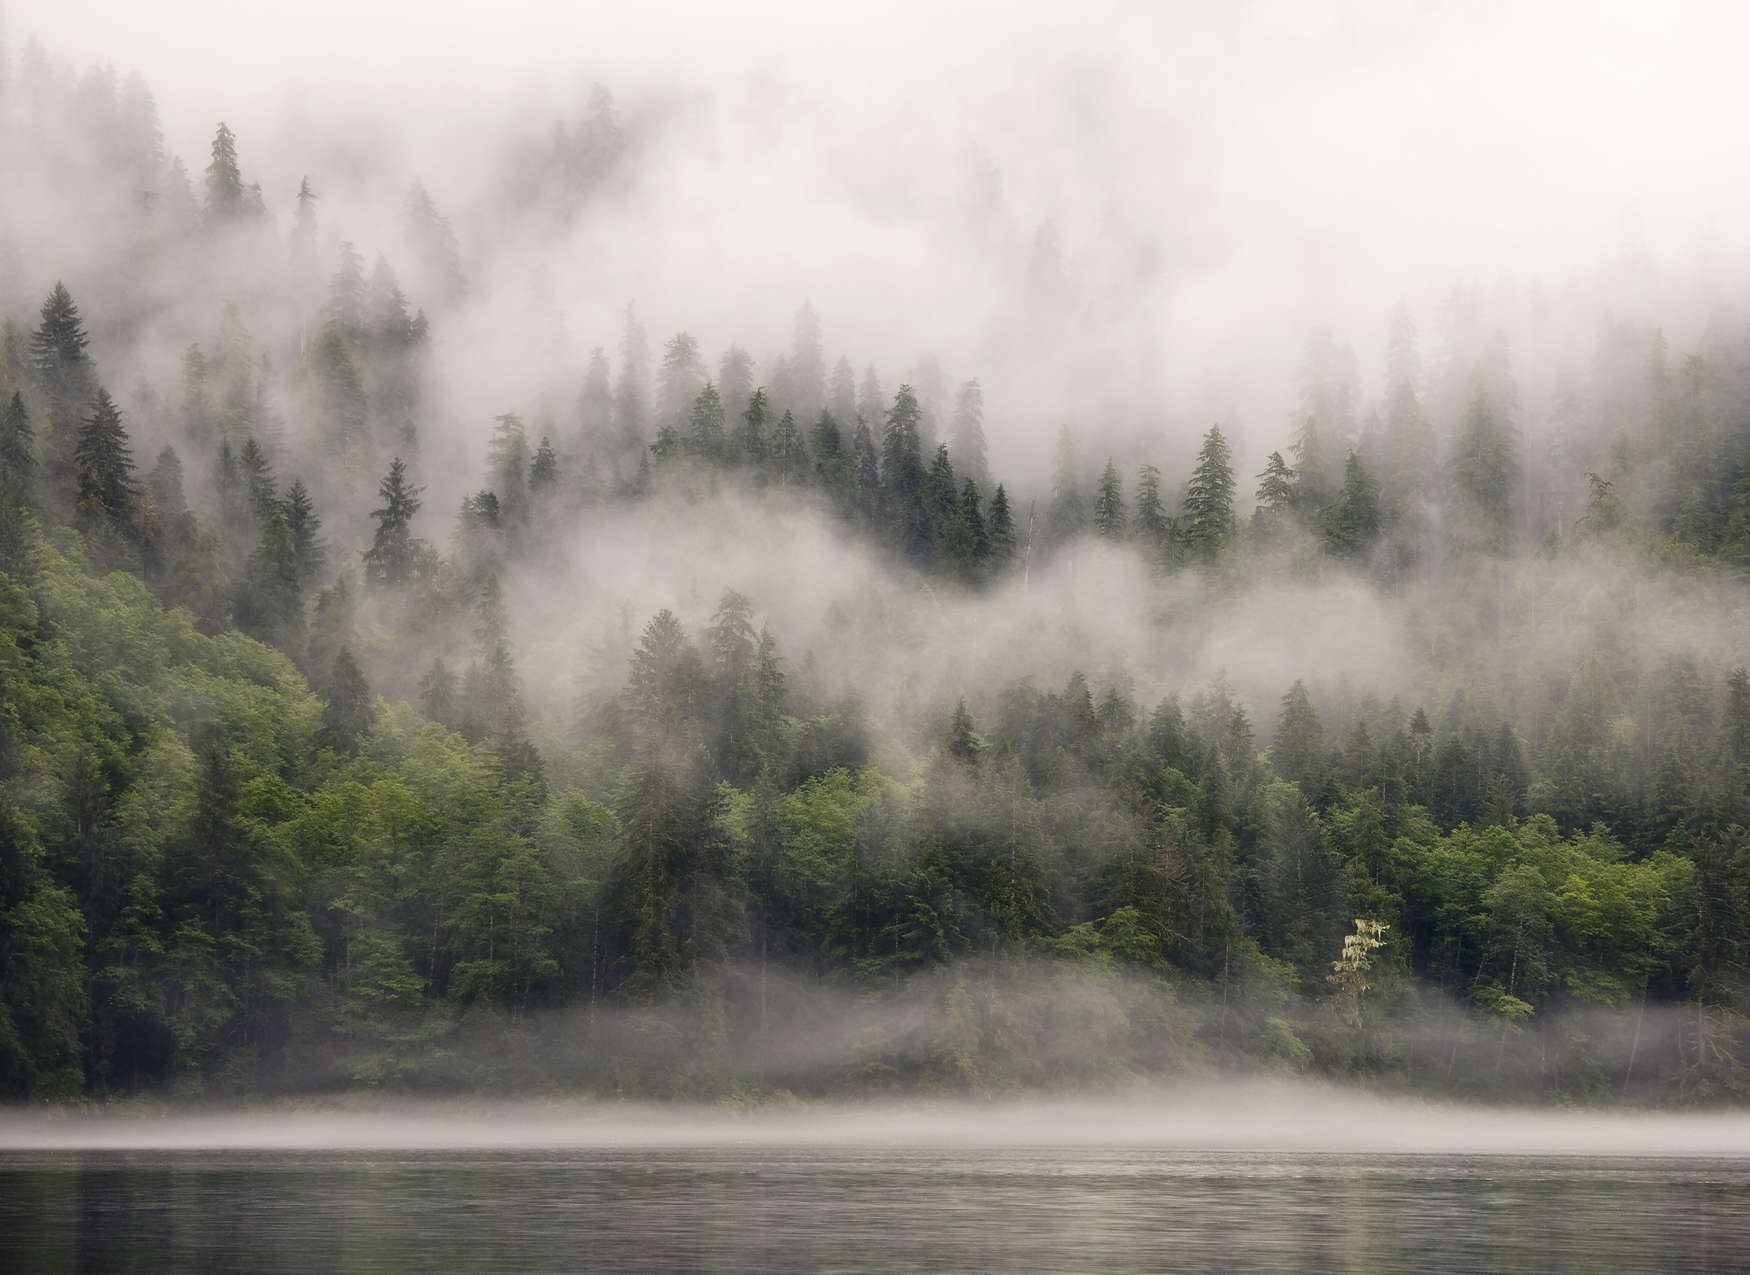             Fototapete vernebelter Wald am See – Grün, Weiß, Beige
        